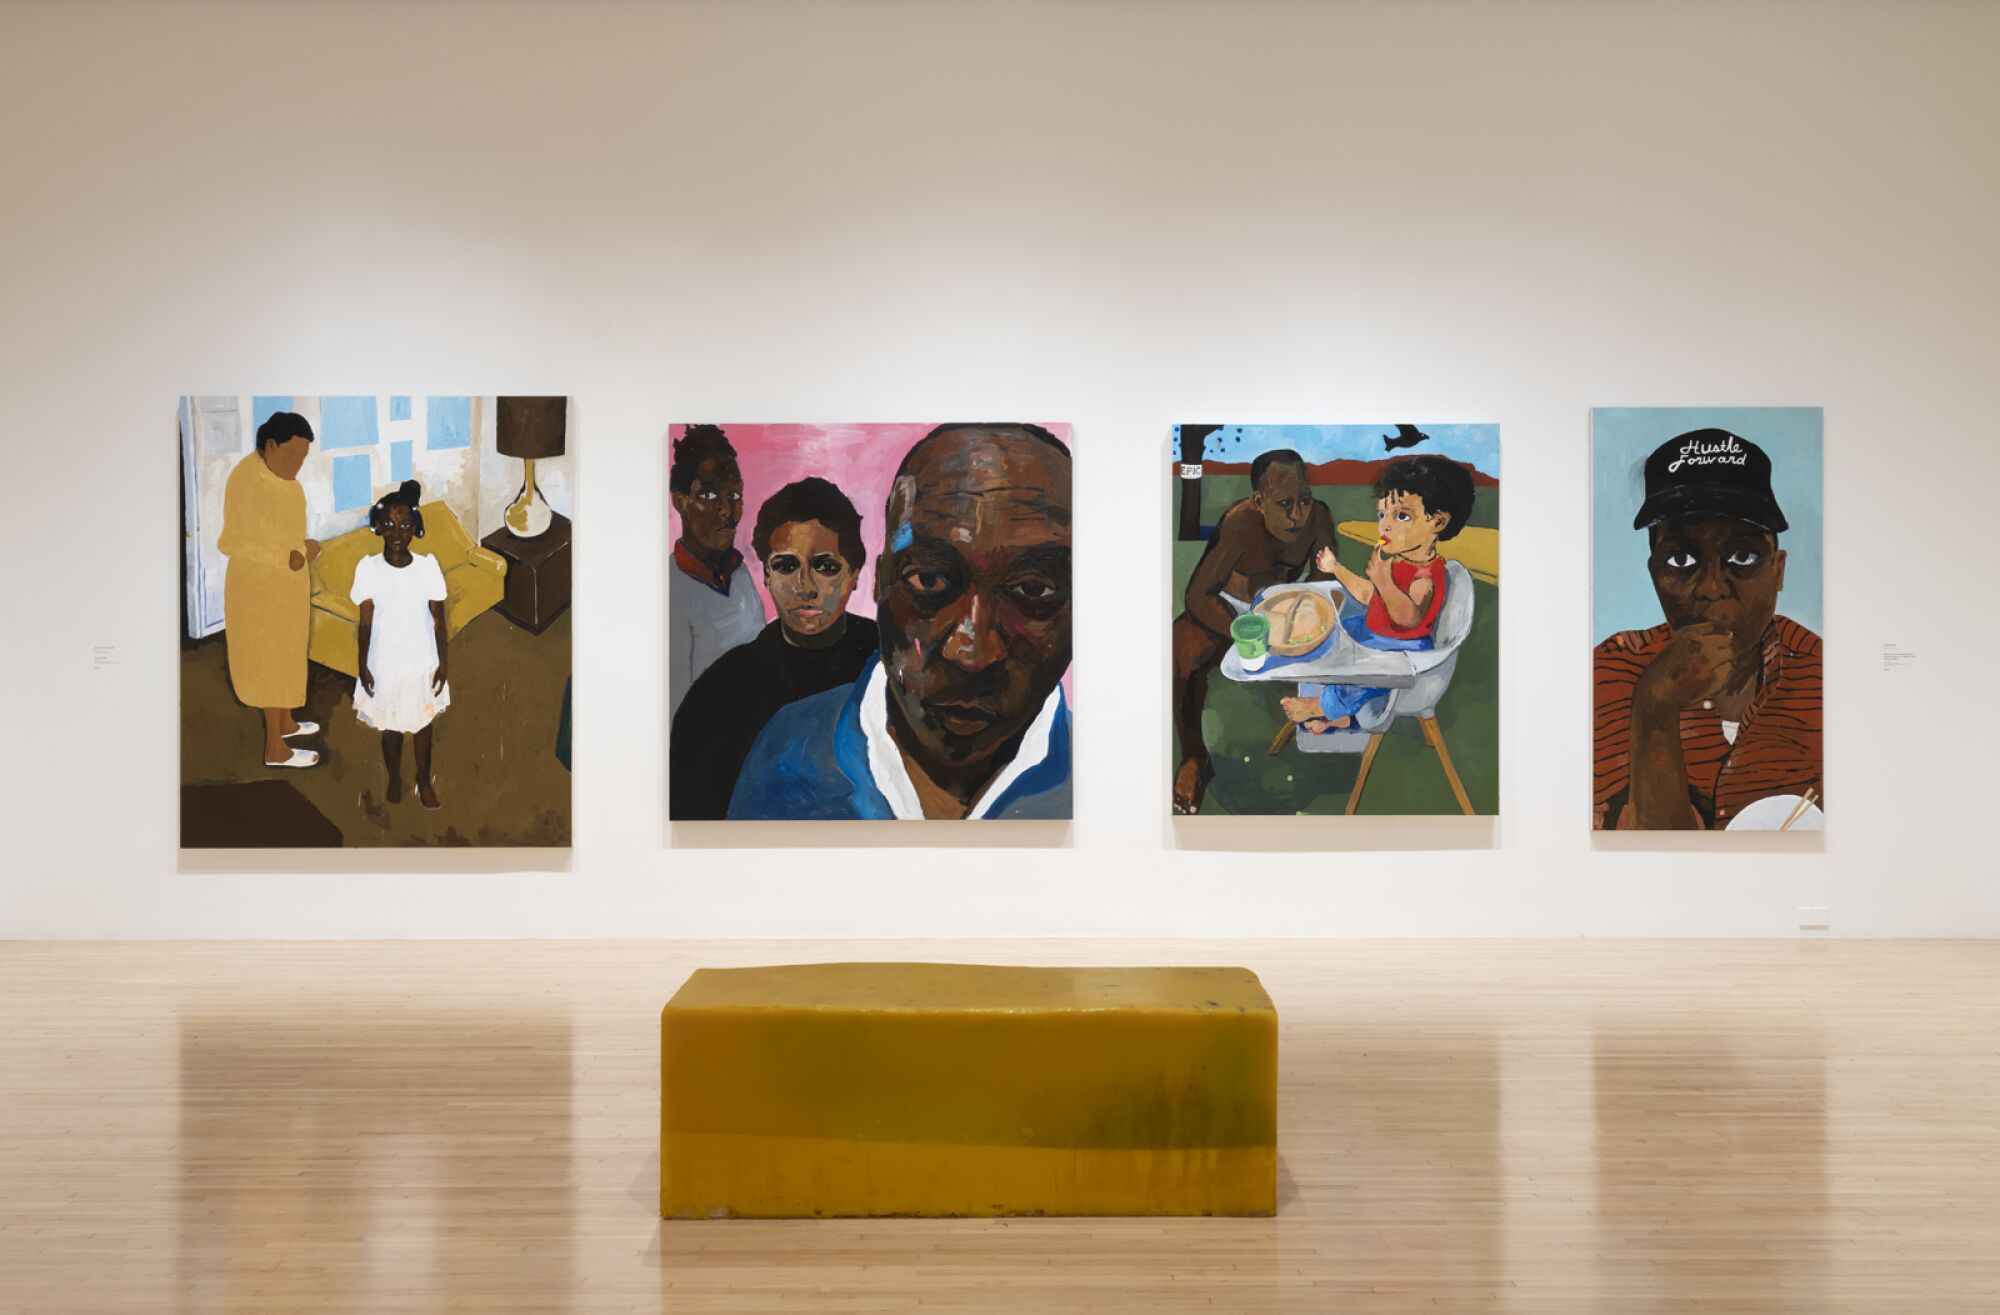 Eine Galerie zeigt vier Gemälde von Henry Taylor, die den Künstler und Familienmitglieder darstellen, sowie eine leuchtend gelbe Bank.